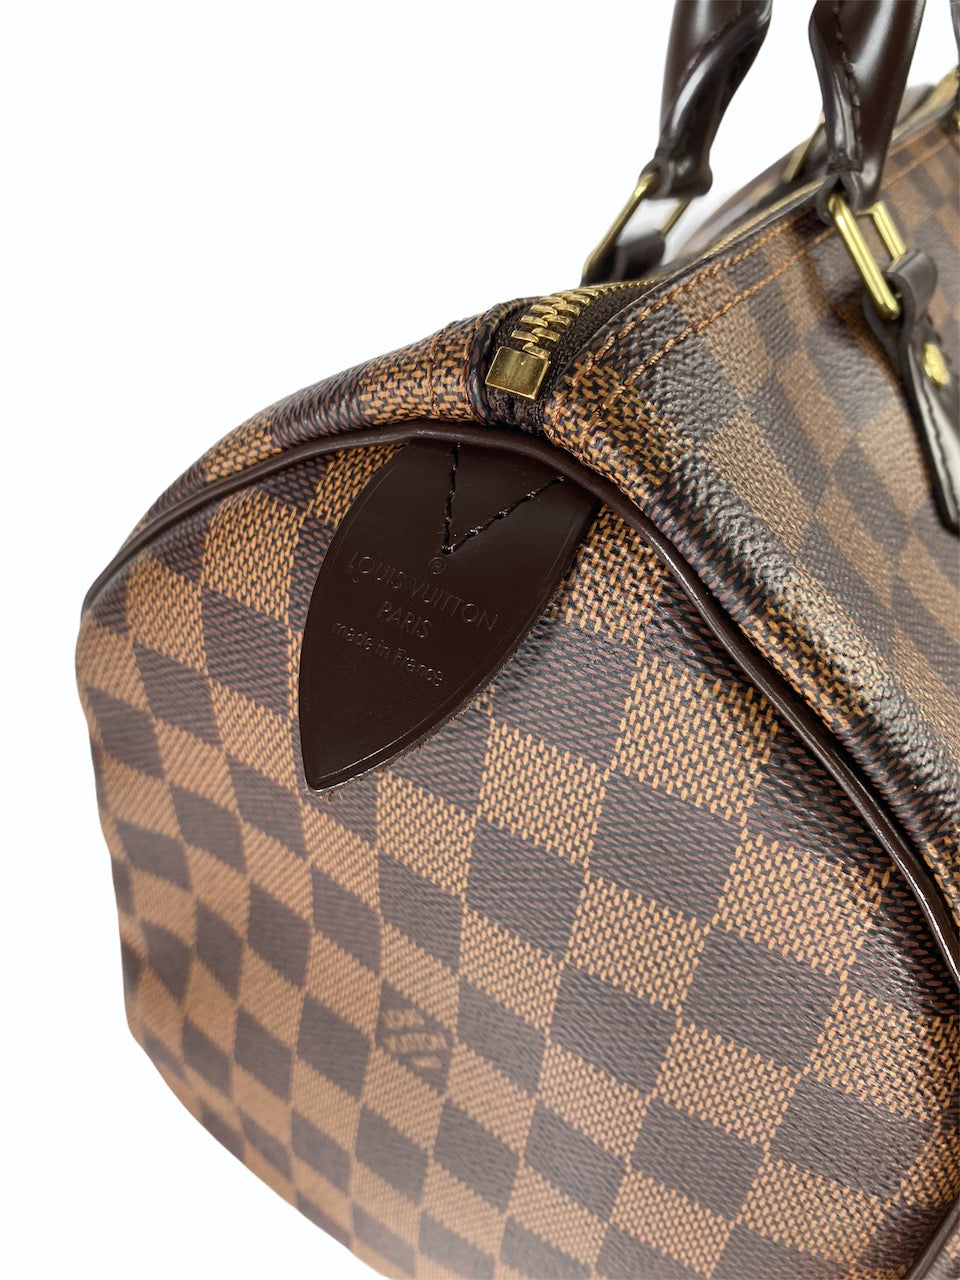 Louis Vuitton Damier “Speedy” 30 - Siopaella Designer Exchange